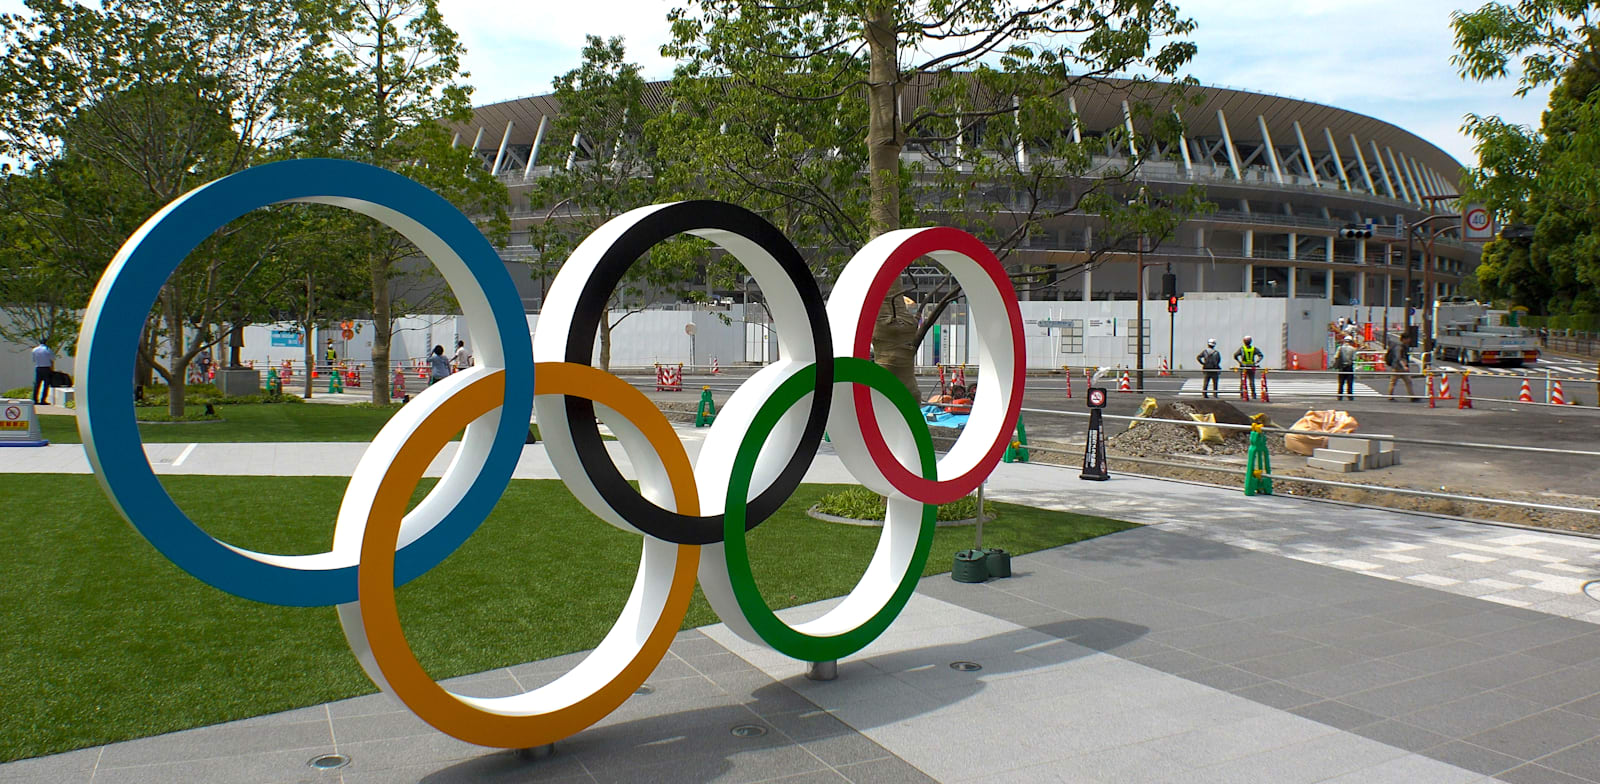 סמל האולימפיאדה באצטדיון האולימפי בטוקיו / צילום: Shutterstock, StreetVJ